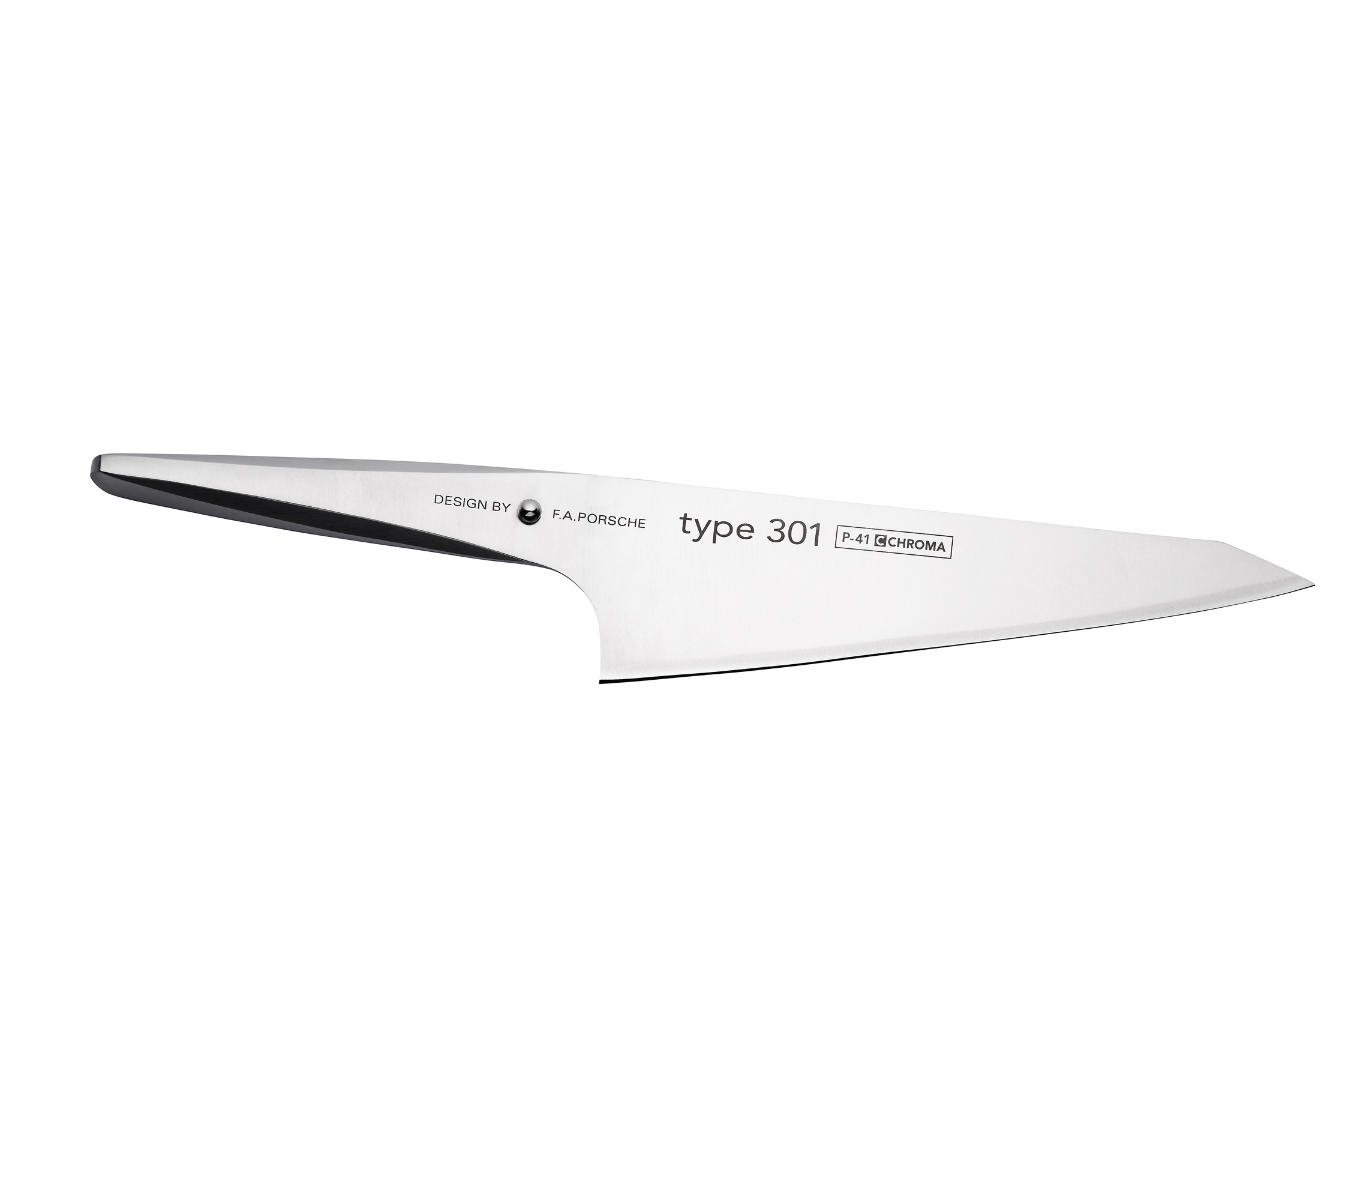 Das Katano Messer, mit seiner besonderen Form, übernimmt die Funktionen eines Kochmesser, sehr gut geeignet zum Schneiden von Fleisch, Fisch und Gemüse.